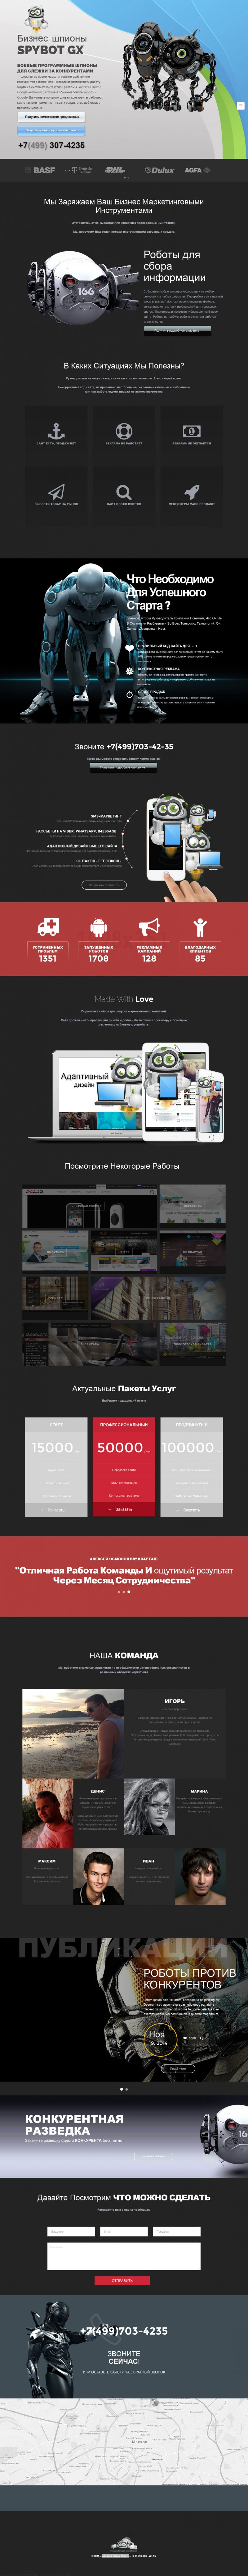 Скриншот сайта «33.ru» от 05.04.2015 года